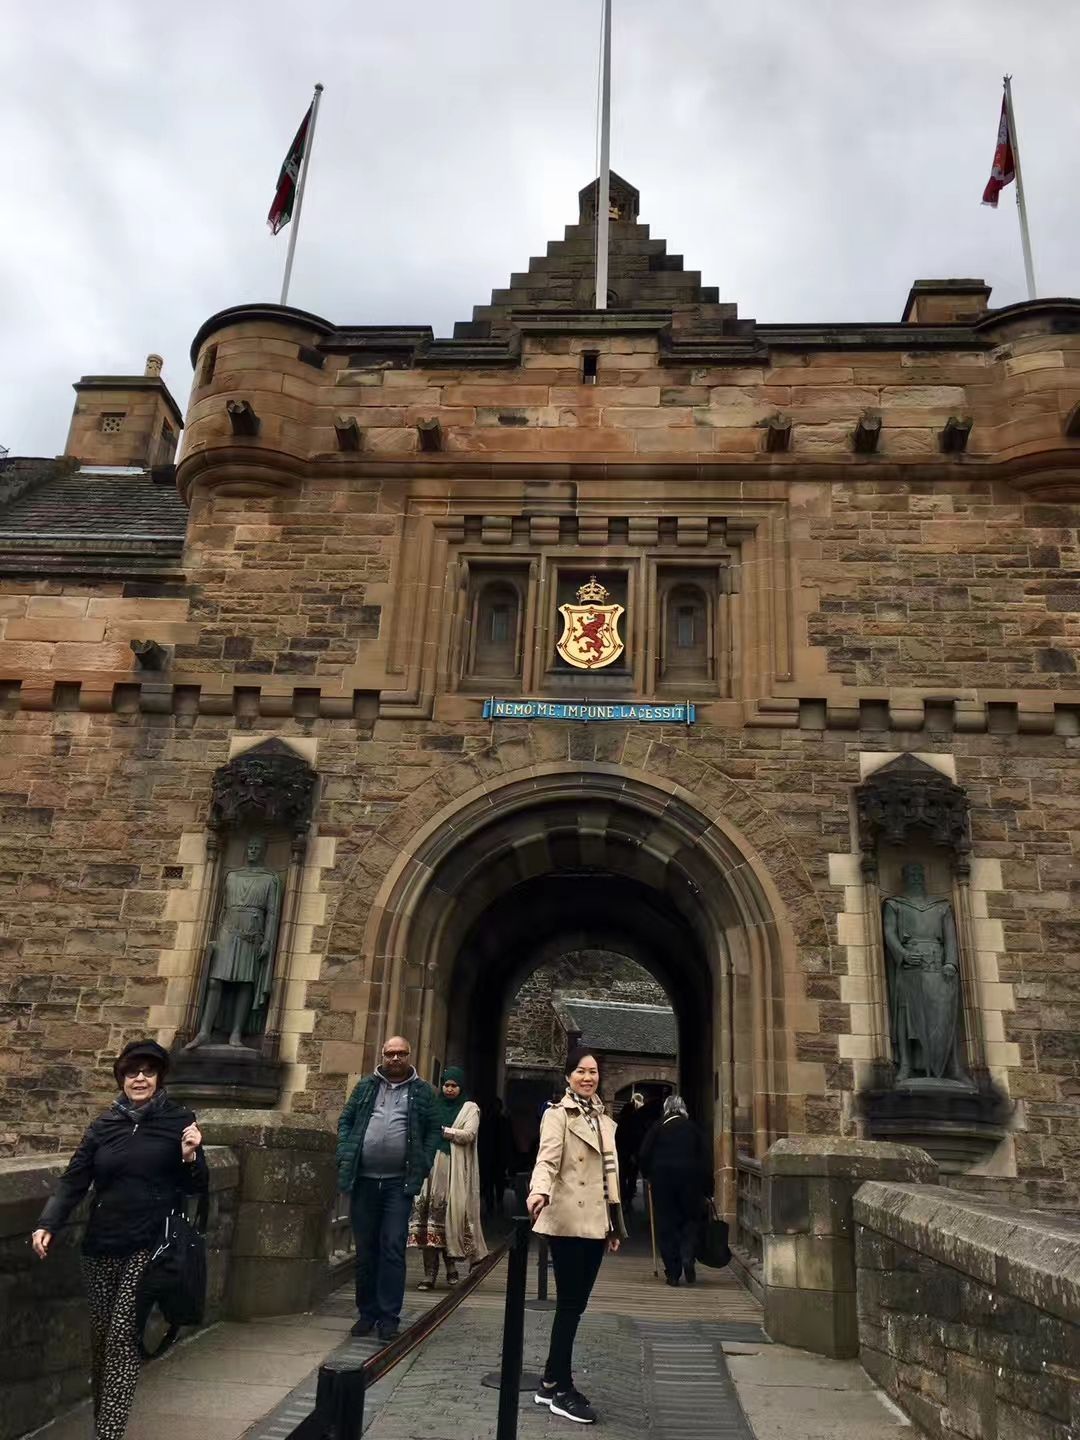 【携程攻略】爱丁堡爱丁堡城堡景点,爱丁堡城堡是爱丁堡甚至是苏格兰的象征, 城堡耸立在爱丁堡市的最高点…